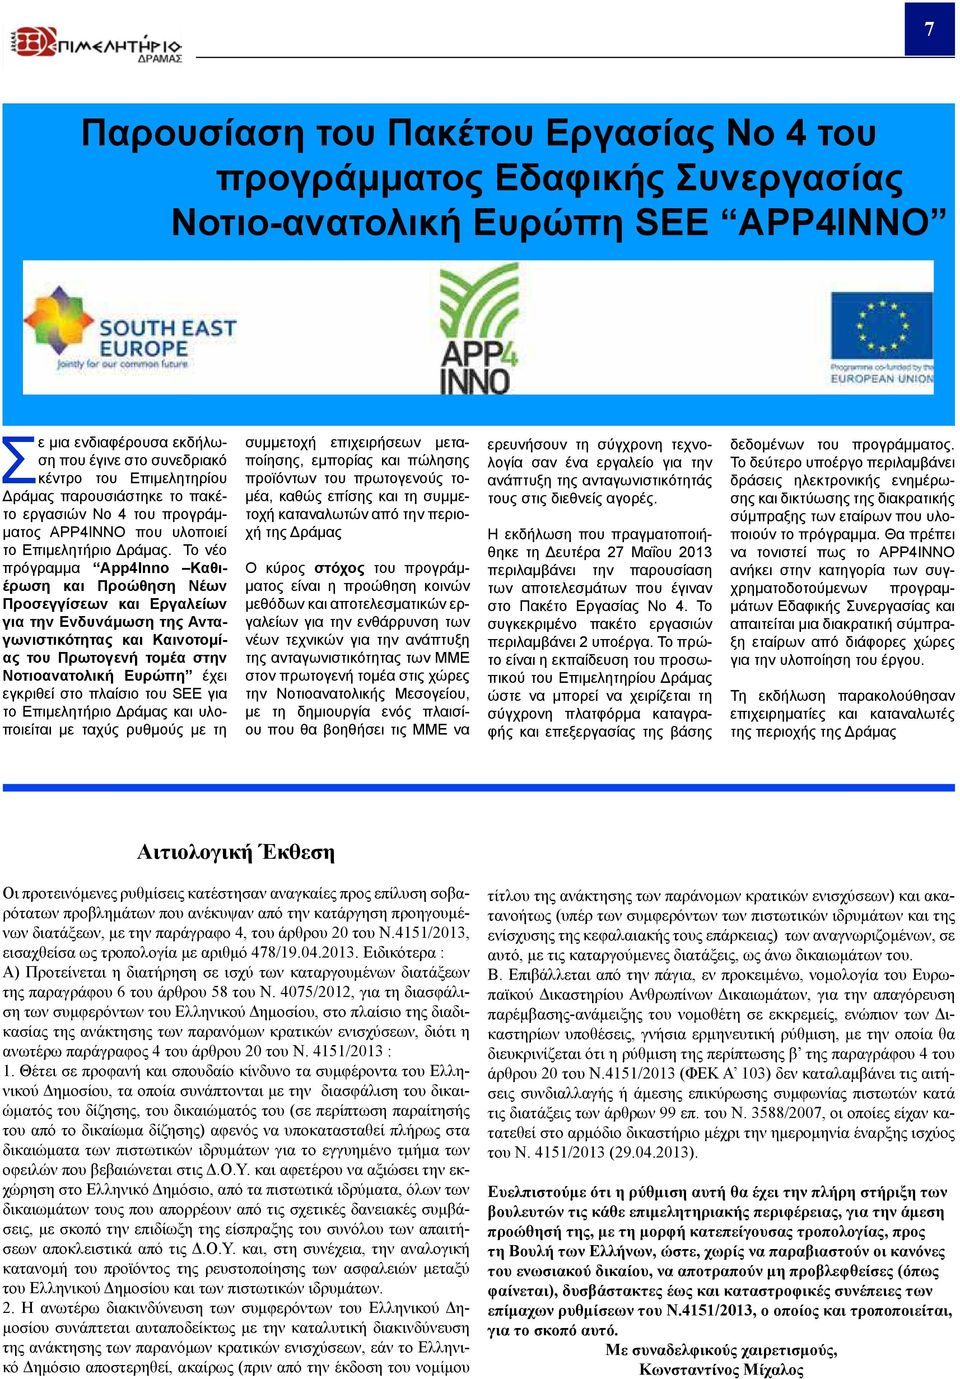 Το νέο πρόγραμμα App4Inno Καθιέρωση και Προώθηση Νέων Προσεγγίσεων και Εργαλείων για την Ενδυνάμωση της Ανταγωνιστικότητας και Καινοτομίας του Πρωτογενή τομέα στην Νοτιοανατολική Ευρώπη έχει εγκριθεί